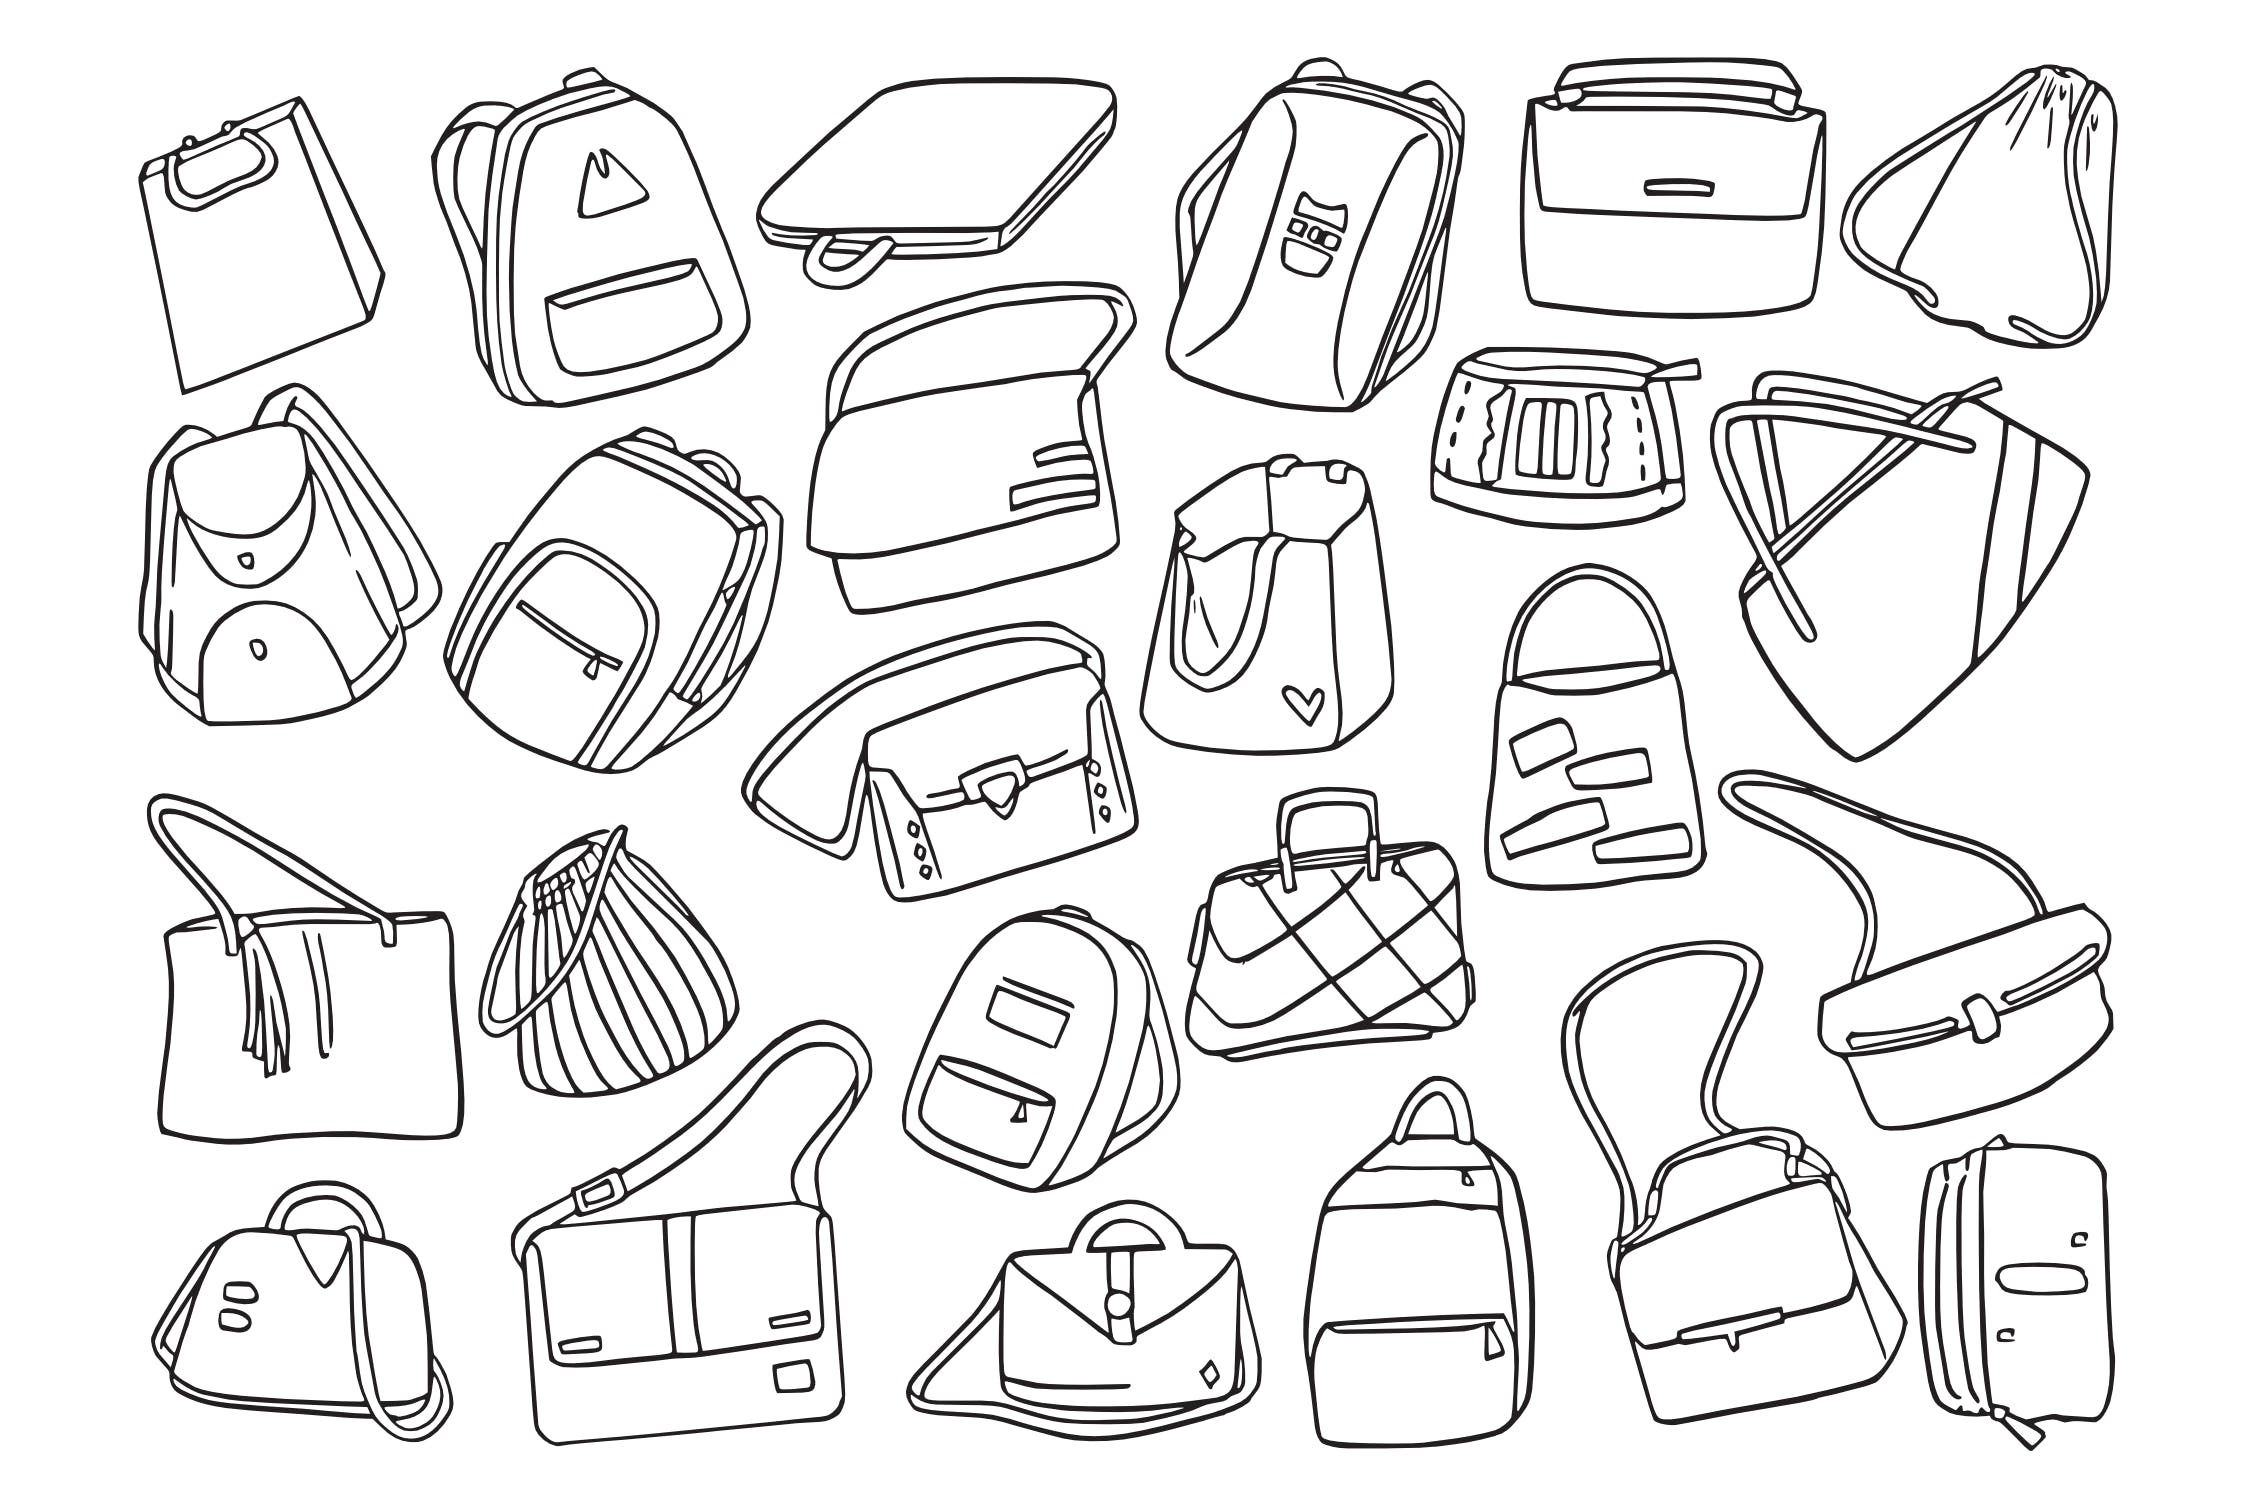 25款时尚背包/挎包涂鸦矢量图形图案素材 Fashion Bag Doodle Vector插图(1)